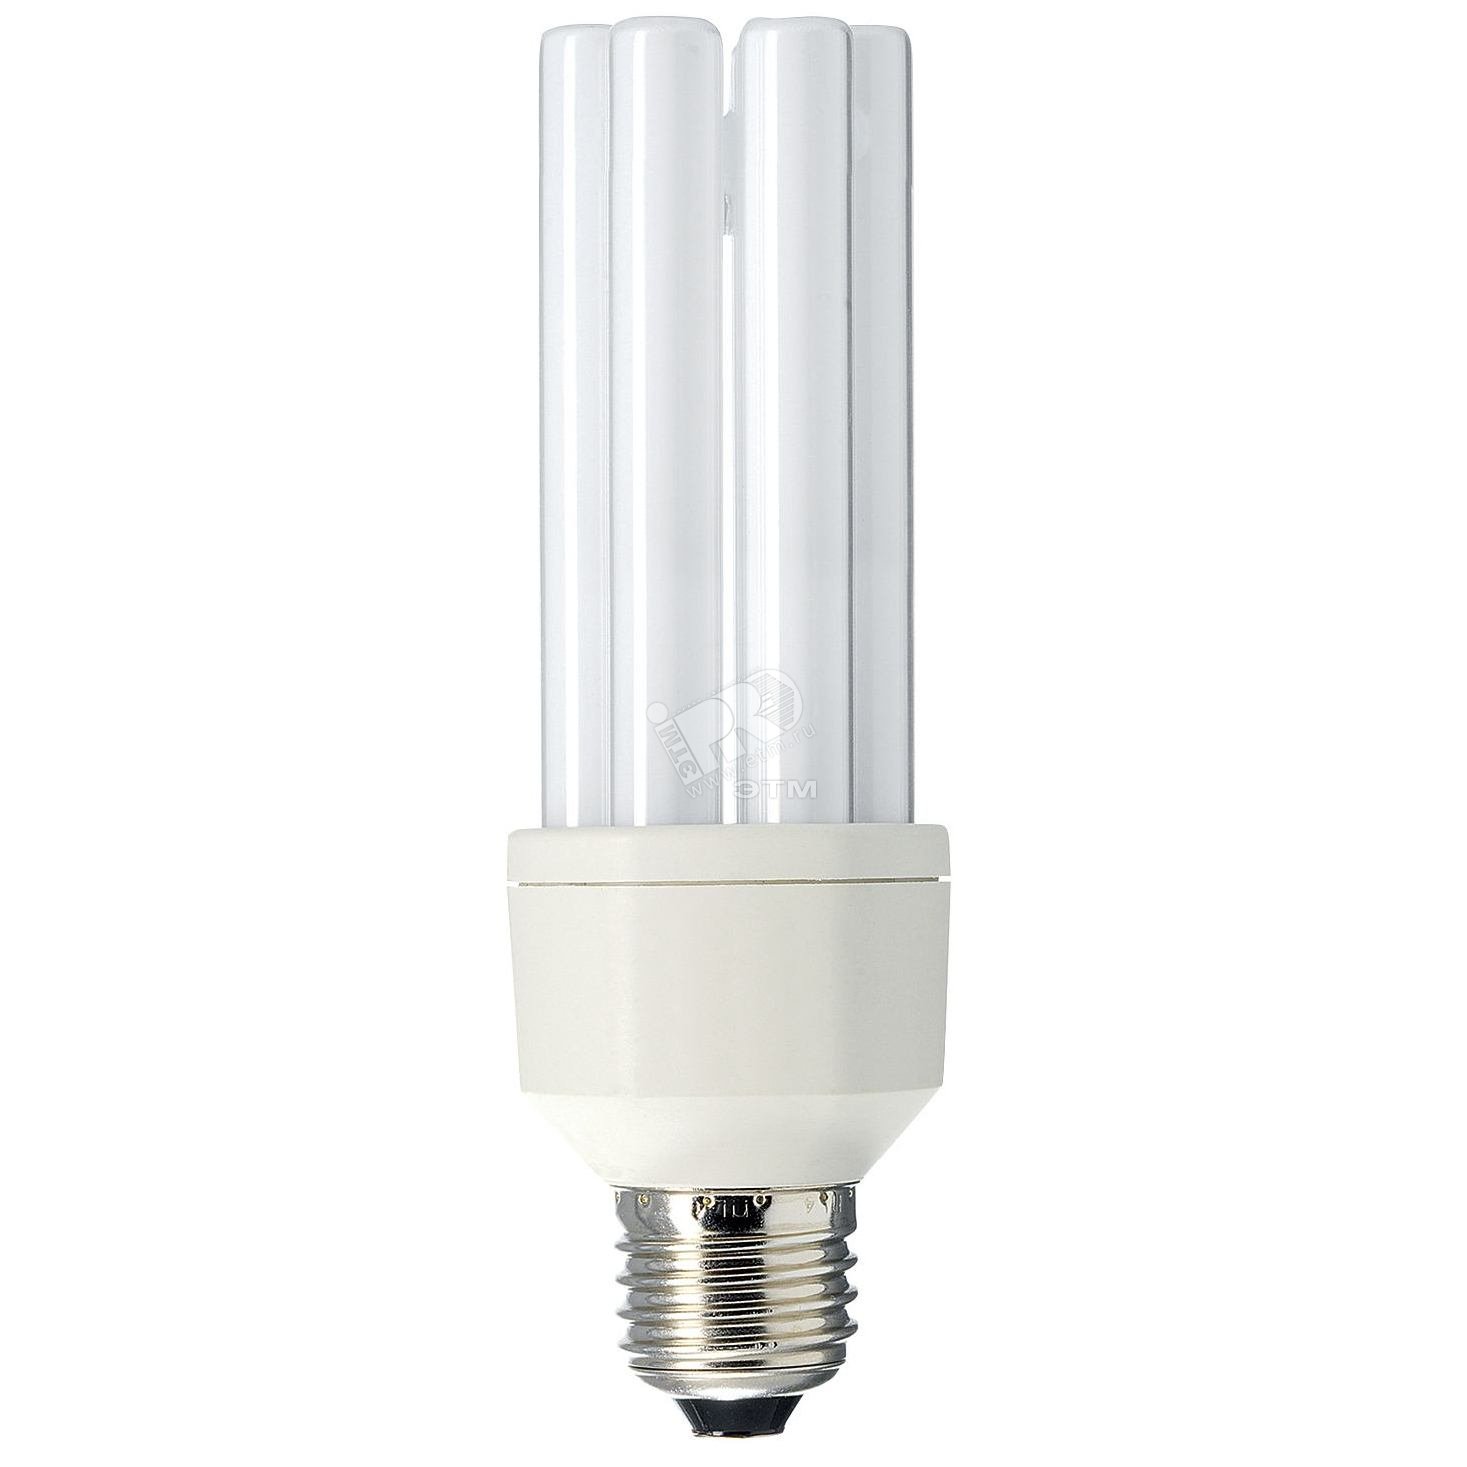 Лампа энергосберегающая КЛЛ 23/827 E27 D40x152 I-образная 929747197005 PHILIPS Lightning